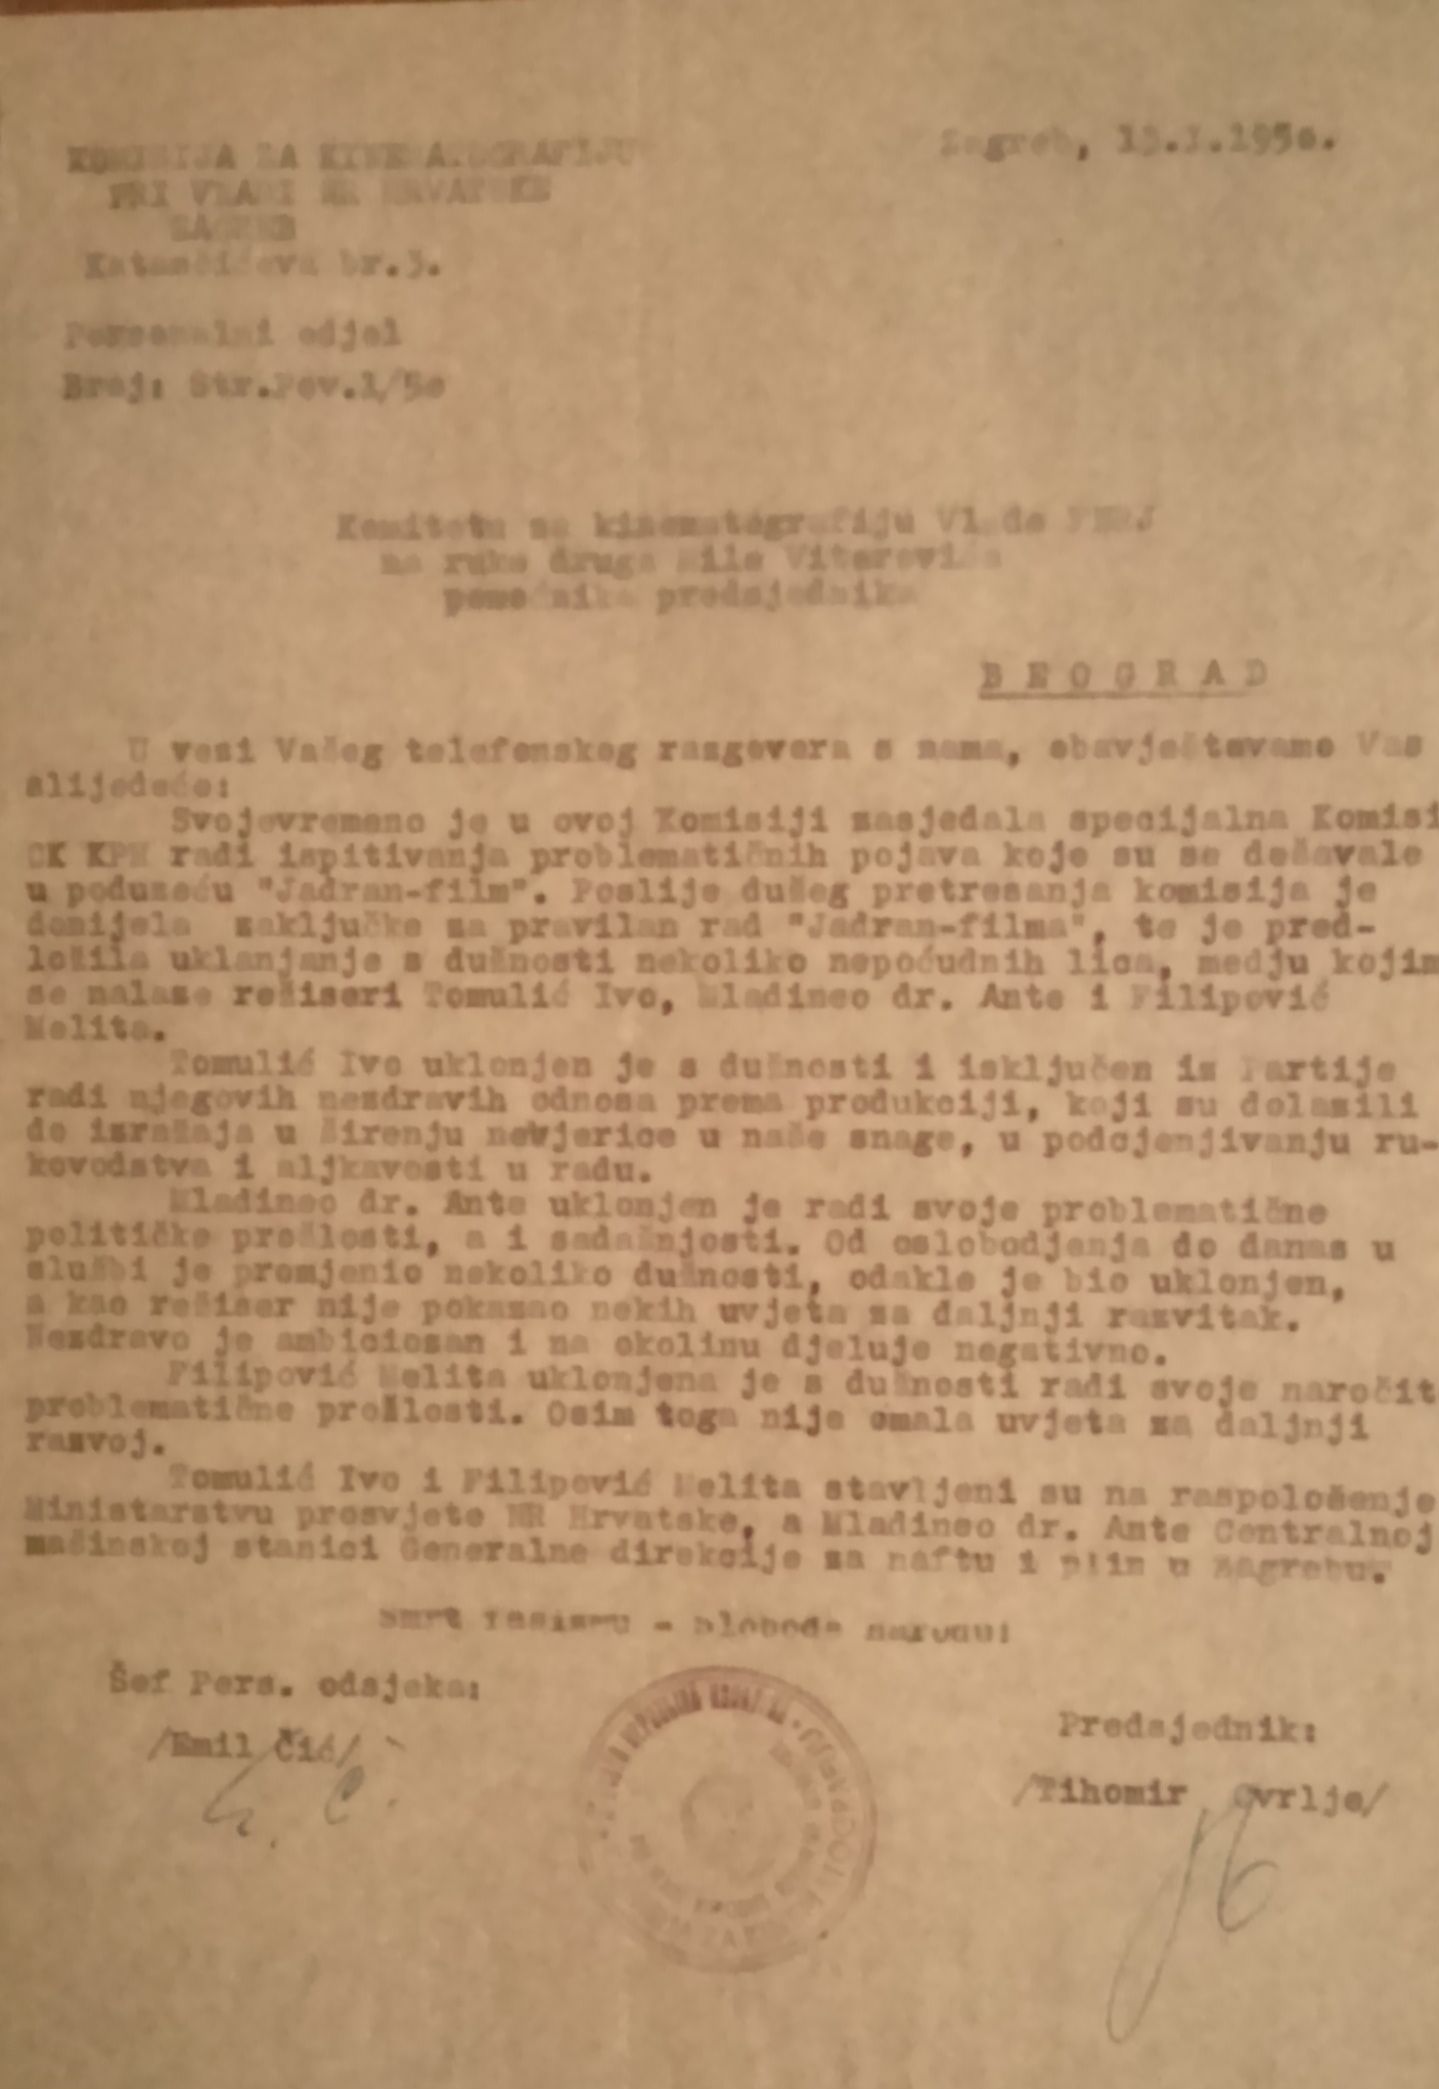 Obavijest o kontroli poslovanja poduzeća Jadran film. 13. siječnja 1950. Arhivski dokument.